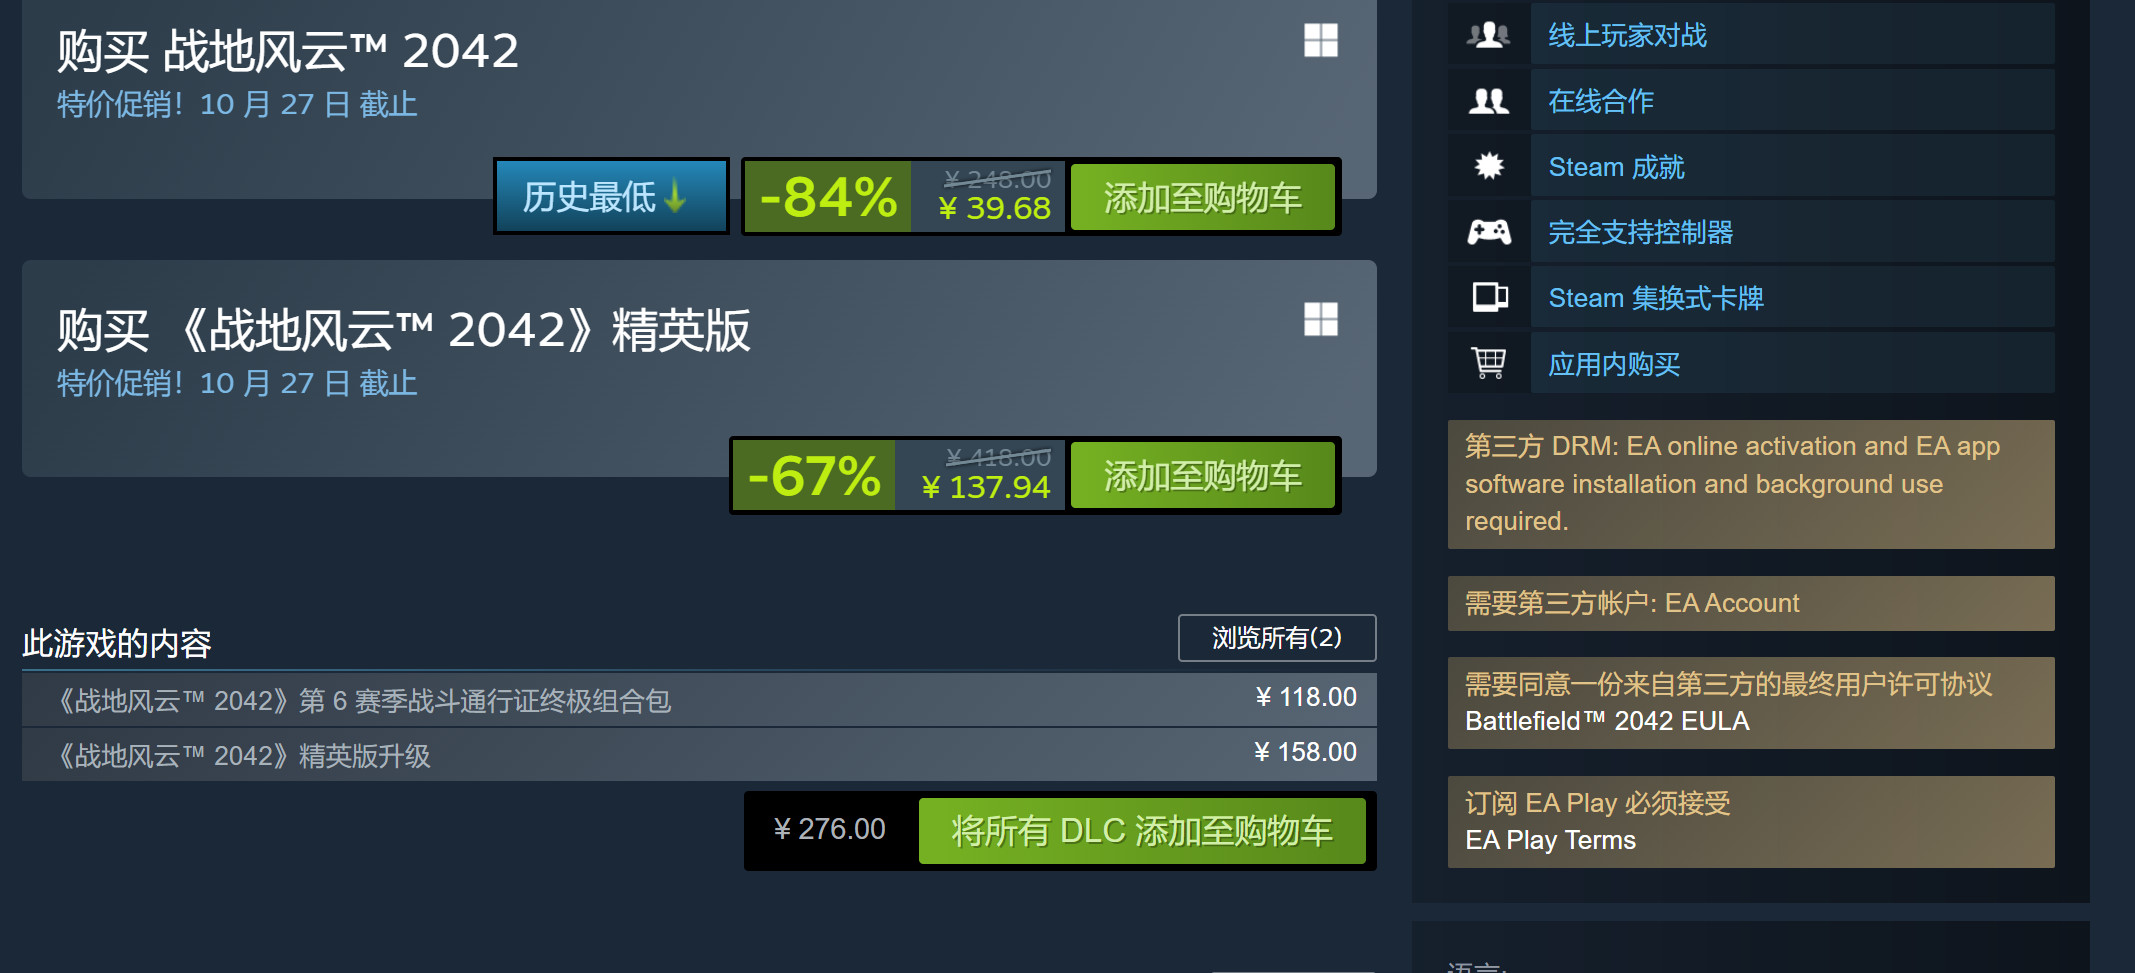 《戰地風雲2042》免費結束後 Steam在線峰值仍接近10萬